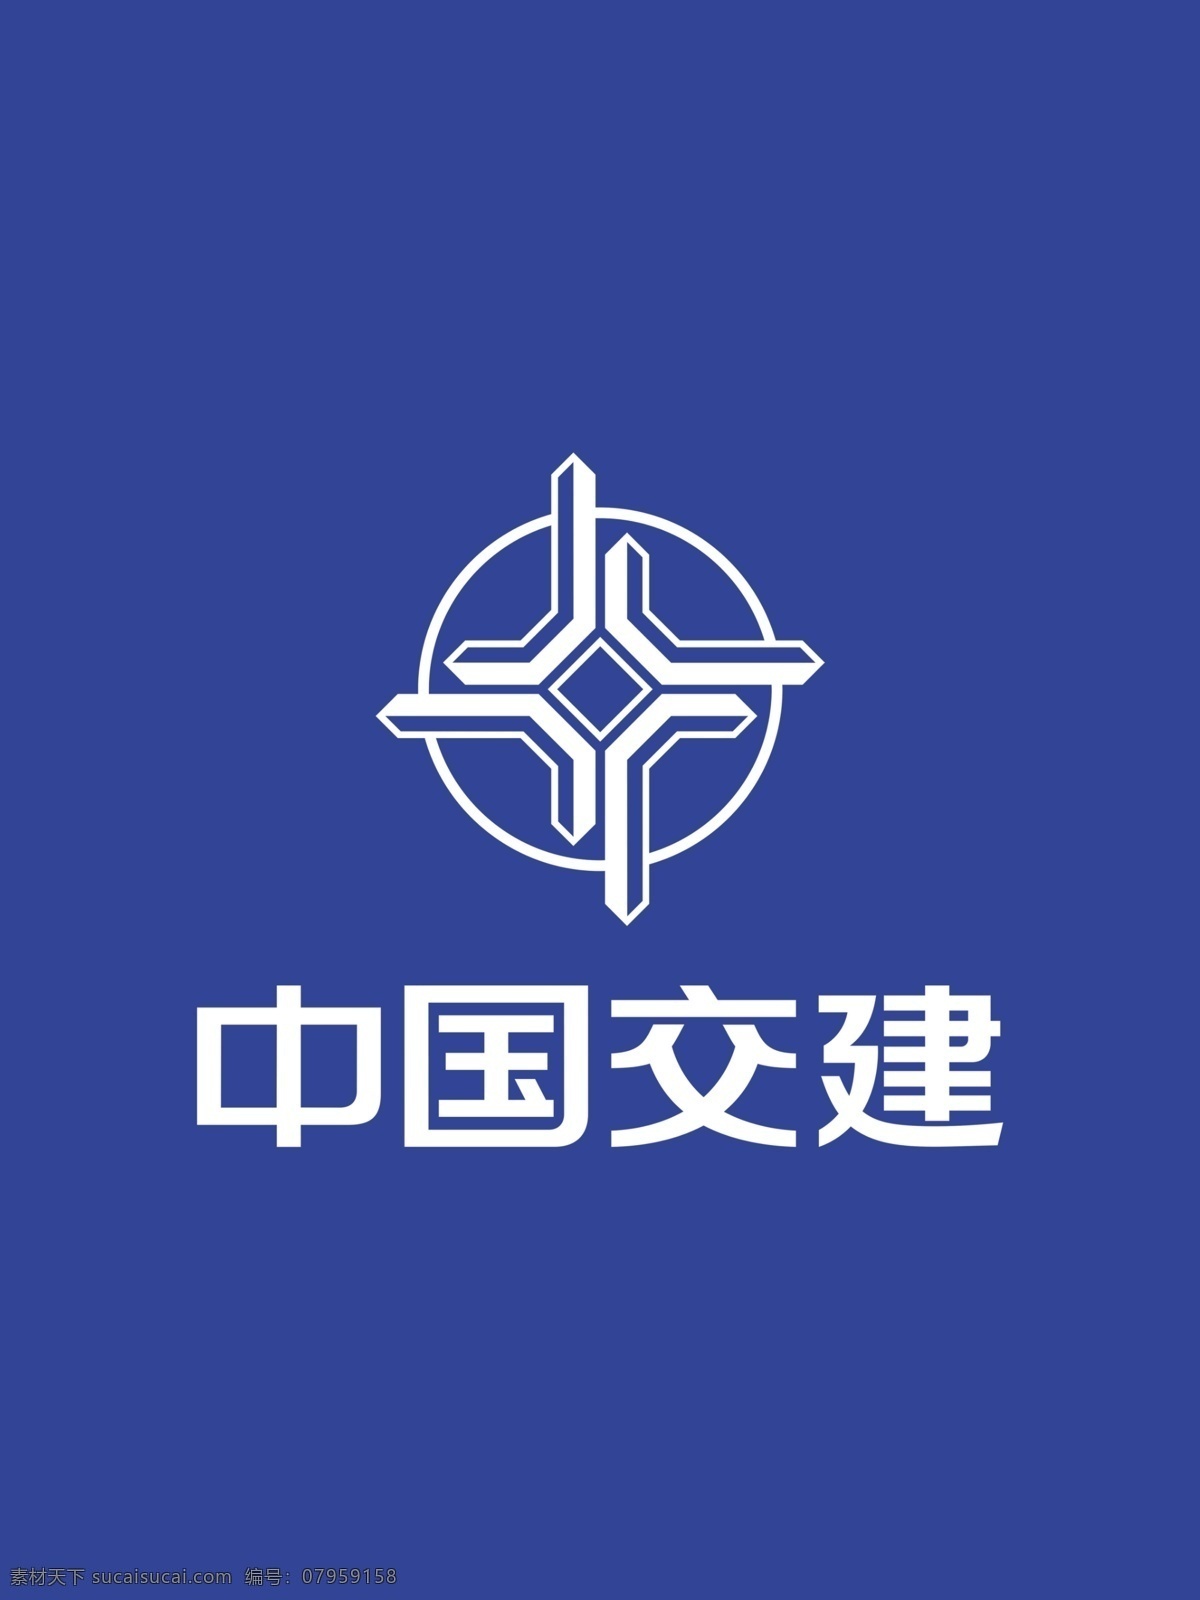 中国交建图片 中国交建 背景 logo 广告